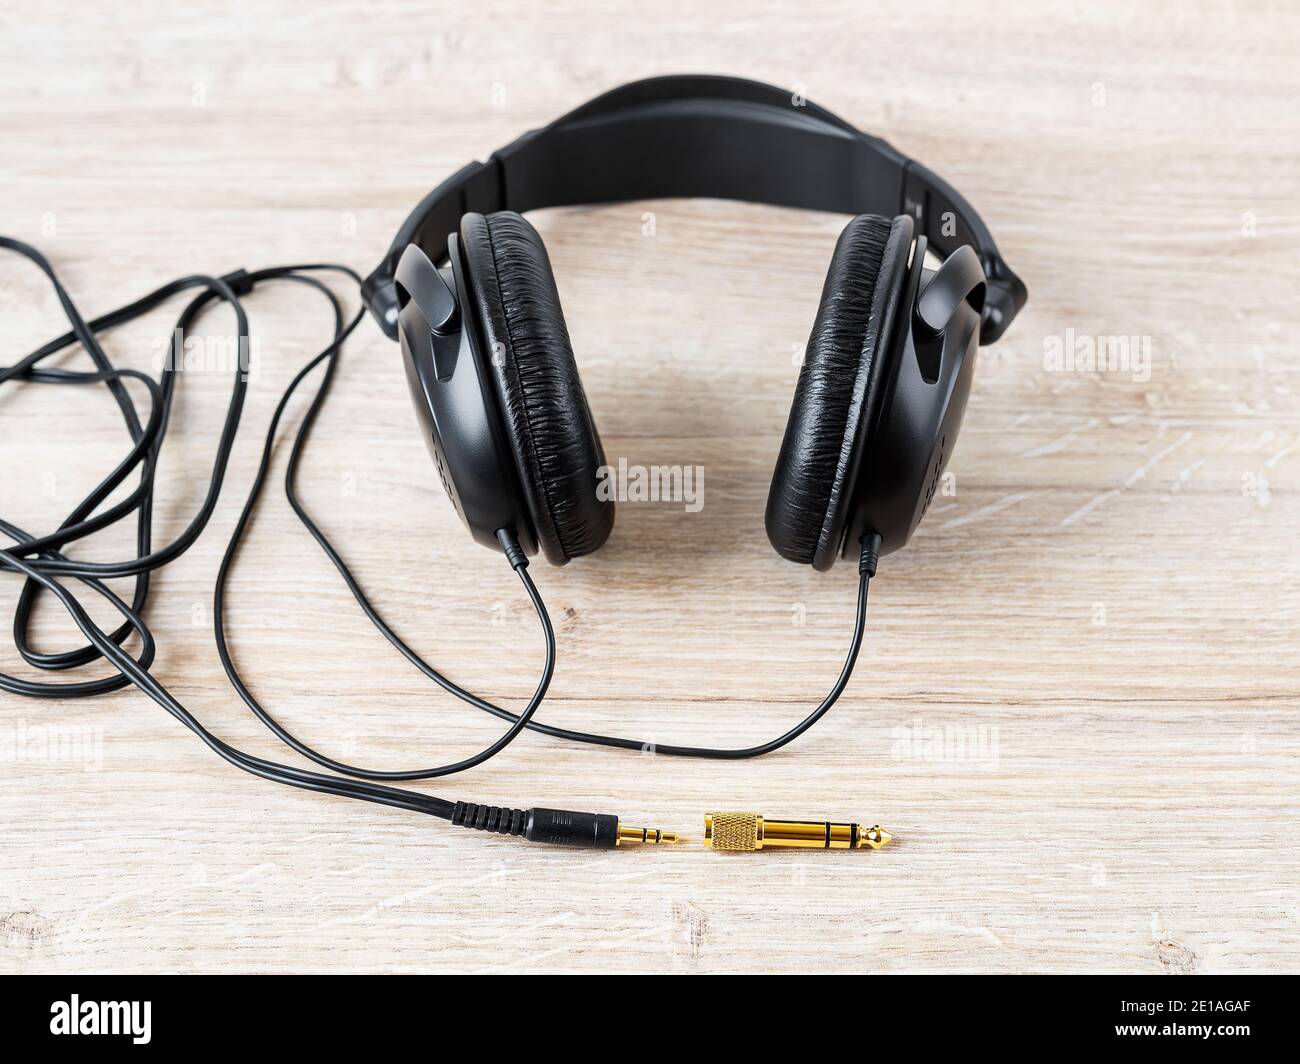 Schwarz verdrahtete Ohrhörer mit goldenem TRS-Adapter und -Buchse auf einem Schreibtisch. Vergoldete Stecker für hochwertige Audioqualität. Gadget für das Hören von Musik. Stockfoto